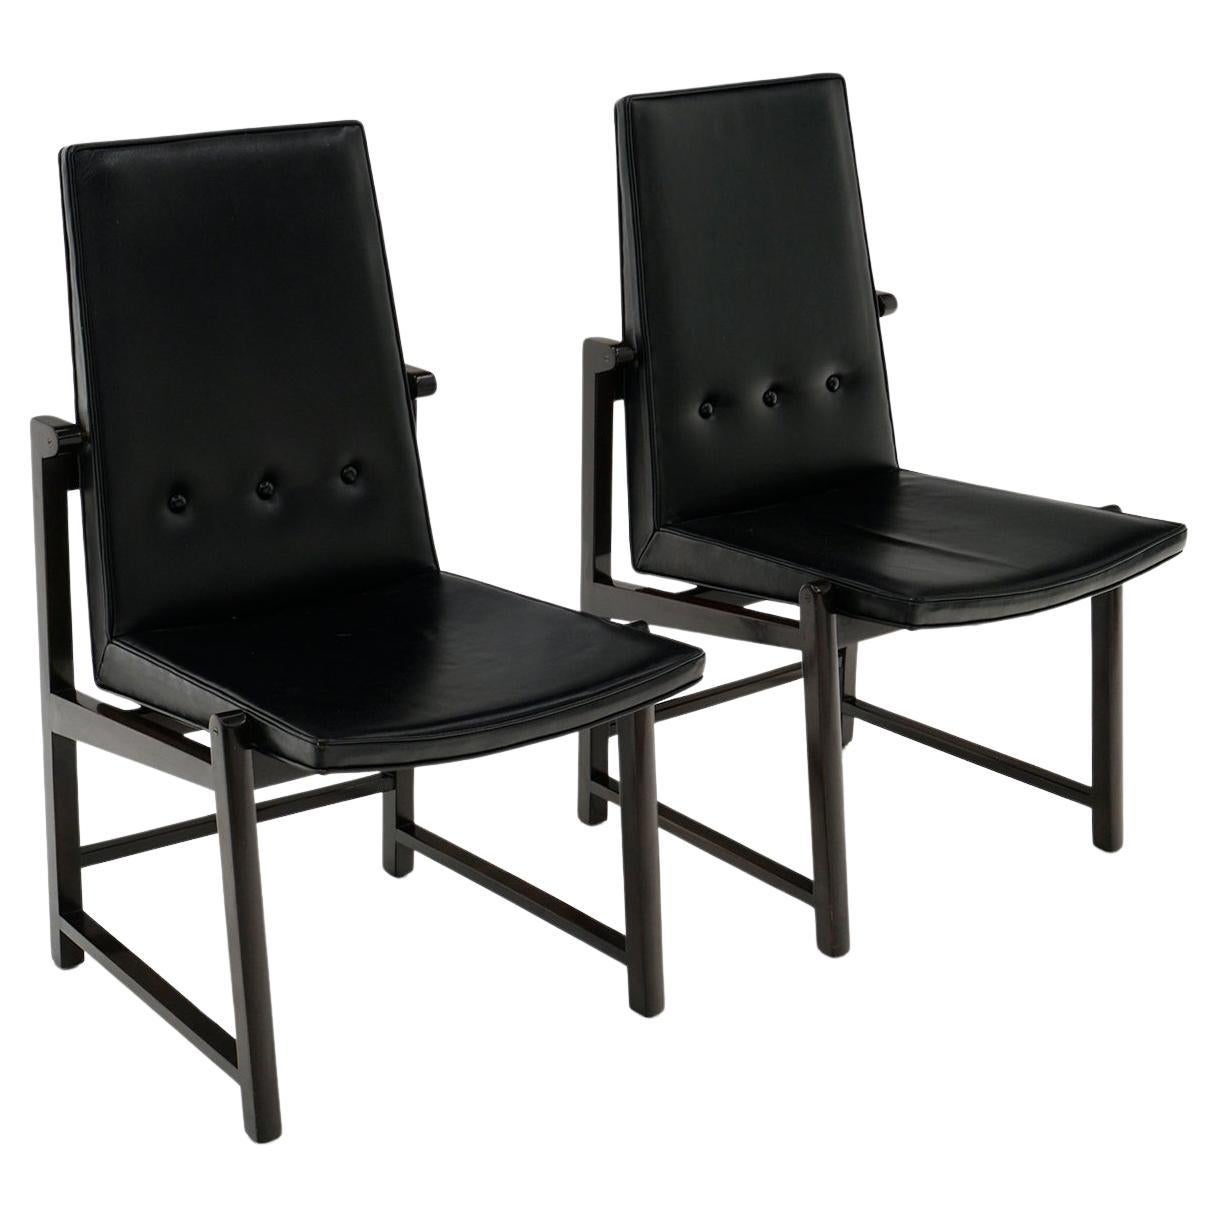 Seltenes Paar Dunbar-Esszimmerstühle aus schwarzem Original-Leder, Mahagoni-Rahmen, signiert